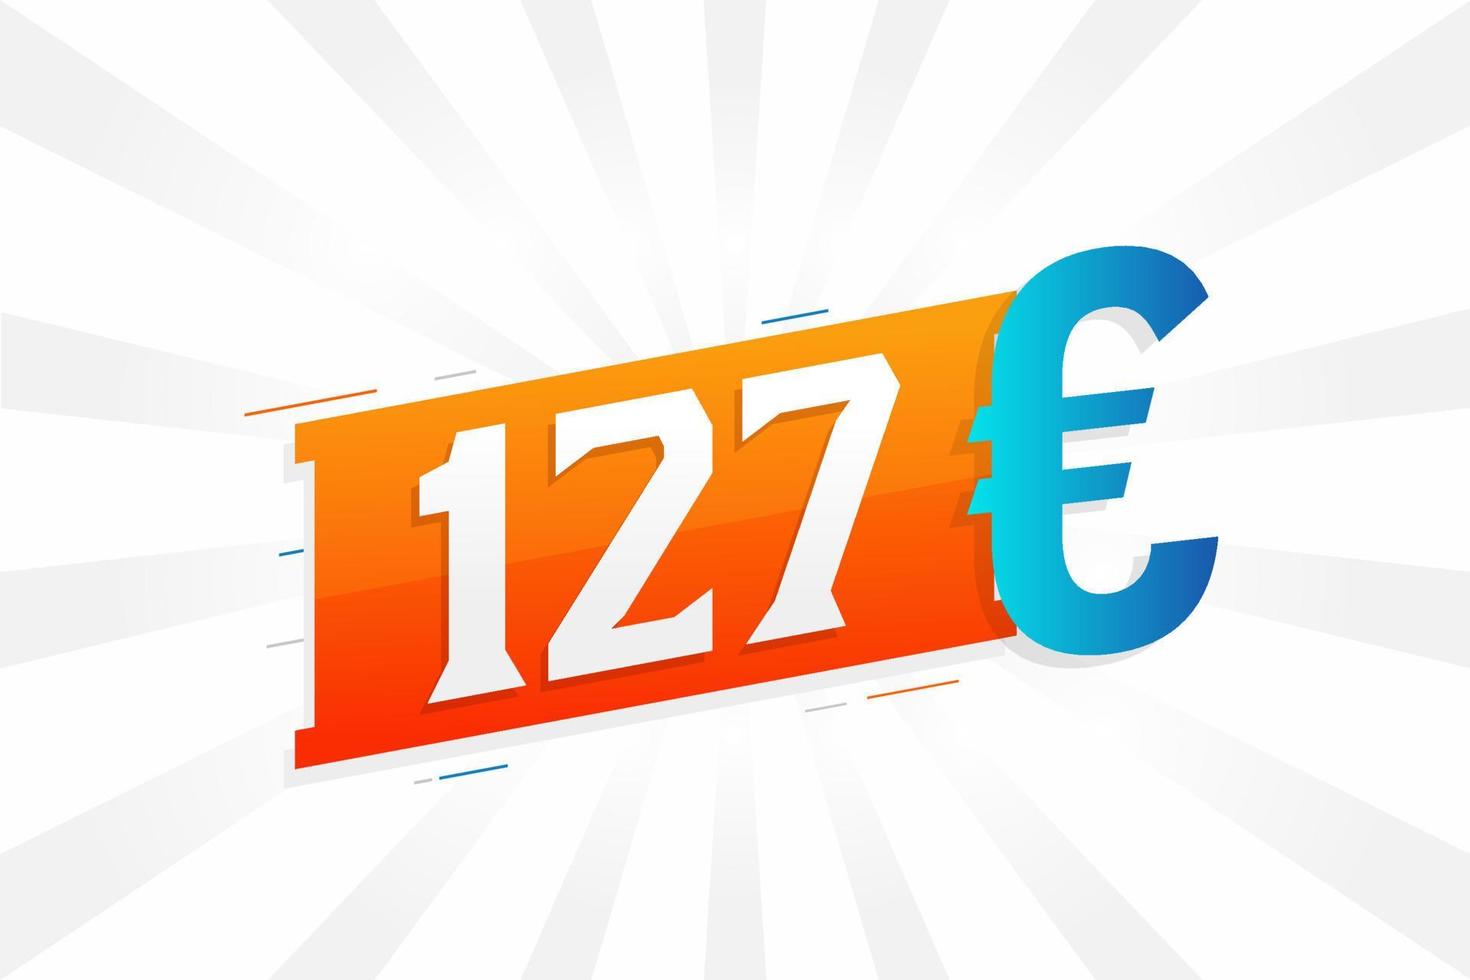 Symbole de texte vectoriel de devise de 127 euros. 127 euro union européenne argent vecteur de stock